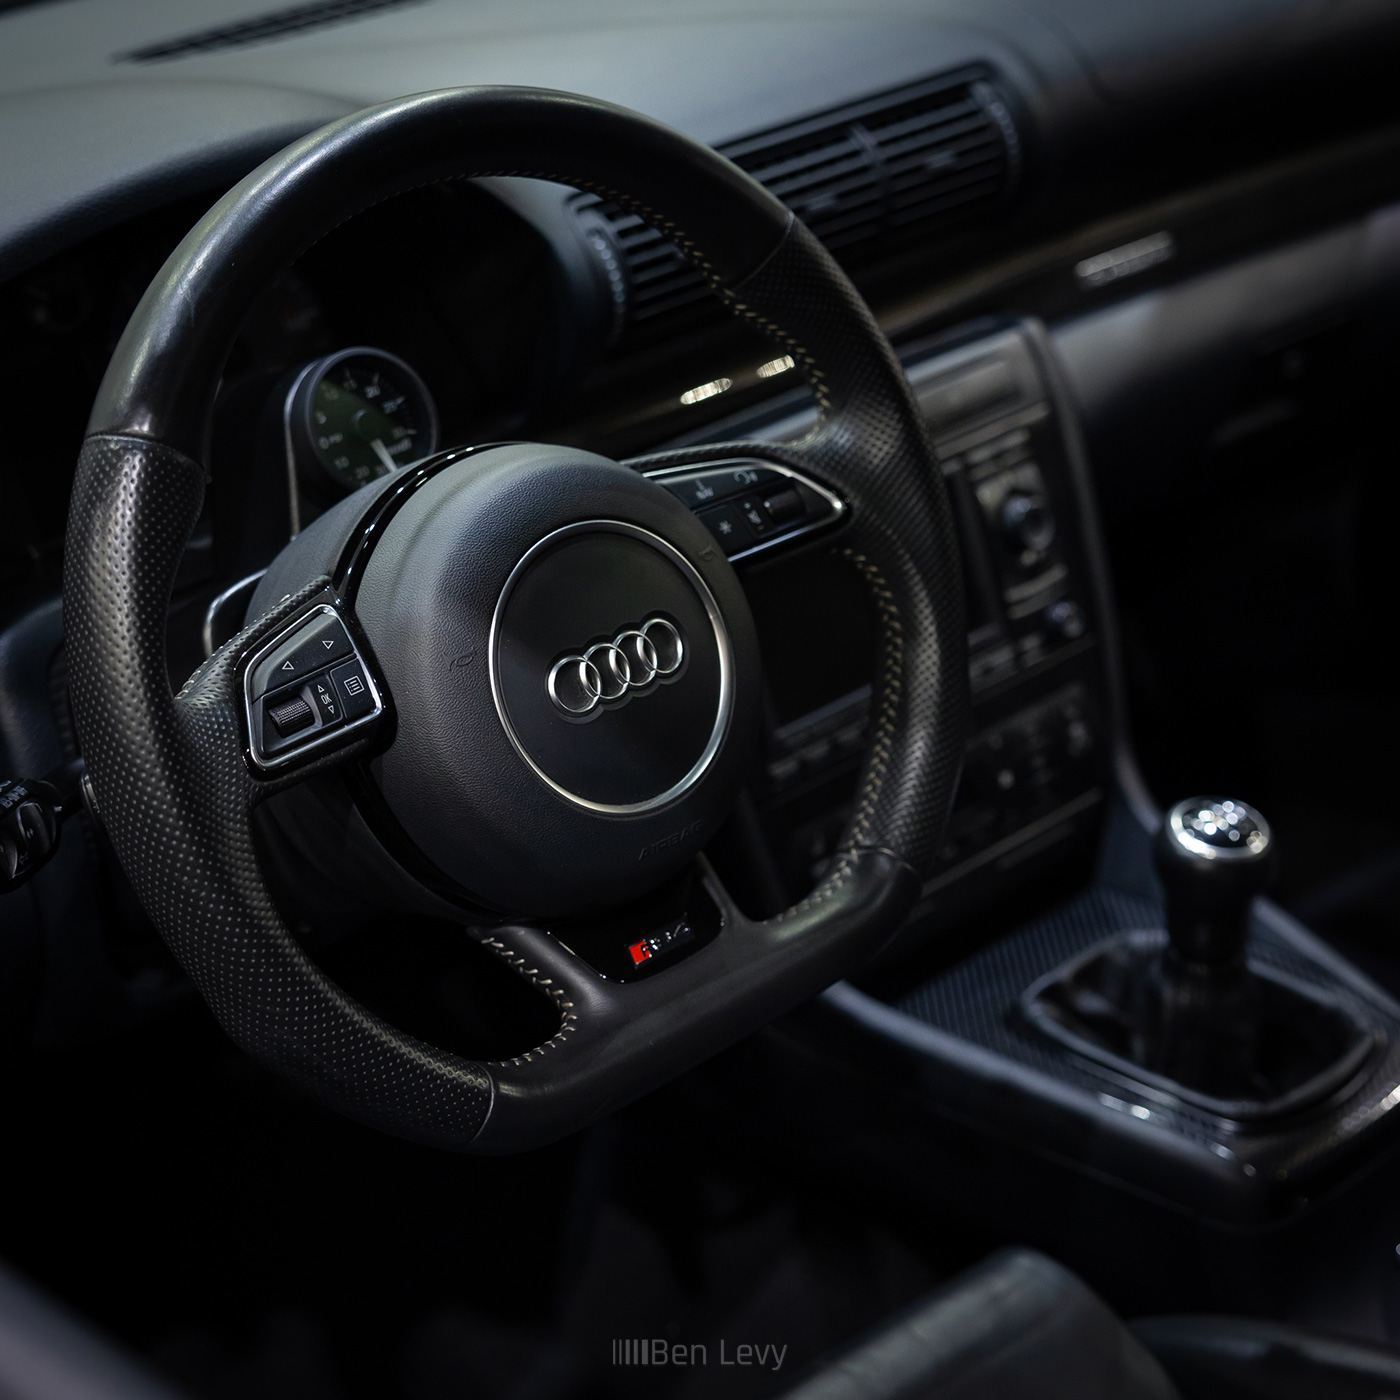 RS4 Steering wheel in B5 Audi S4